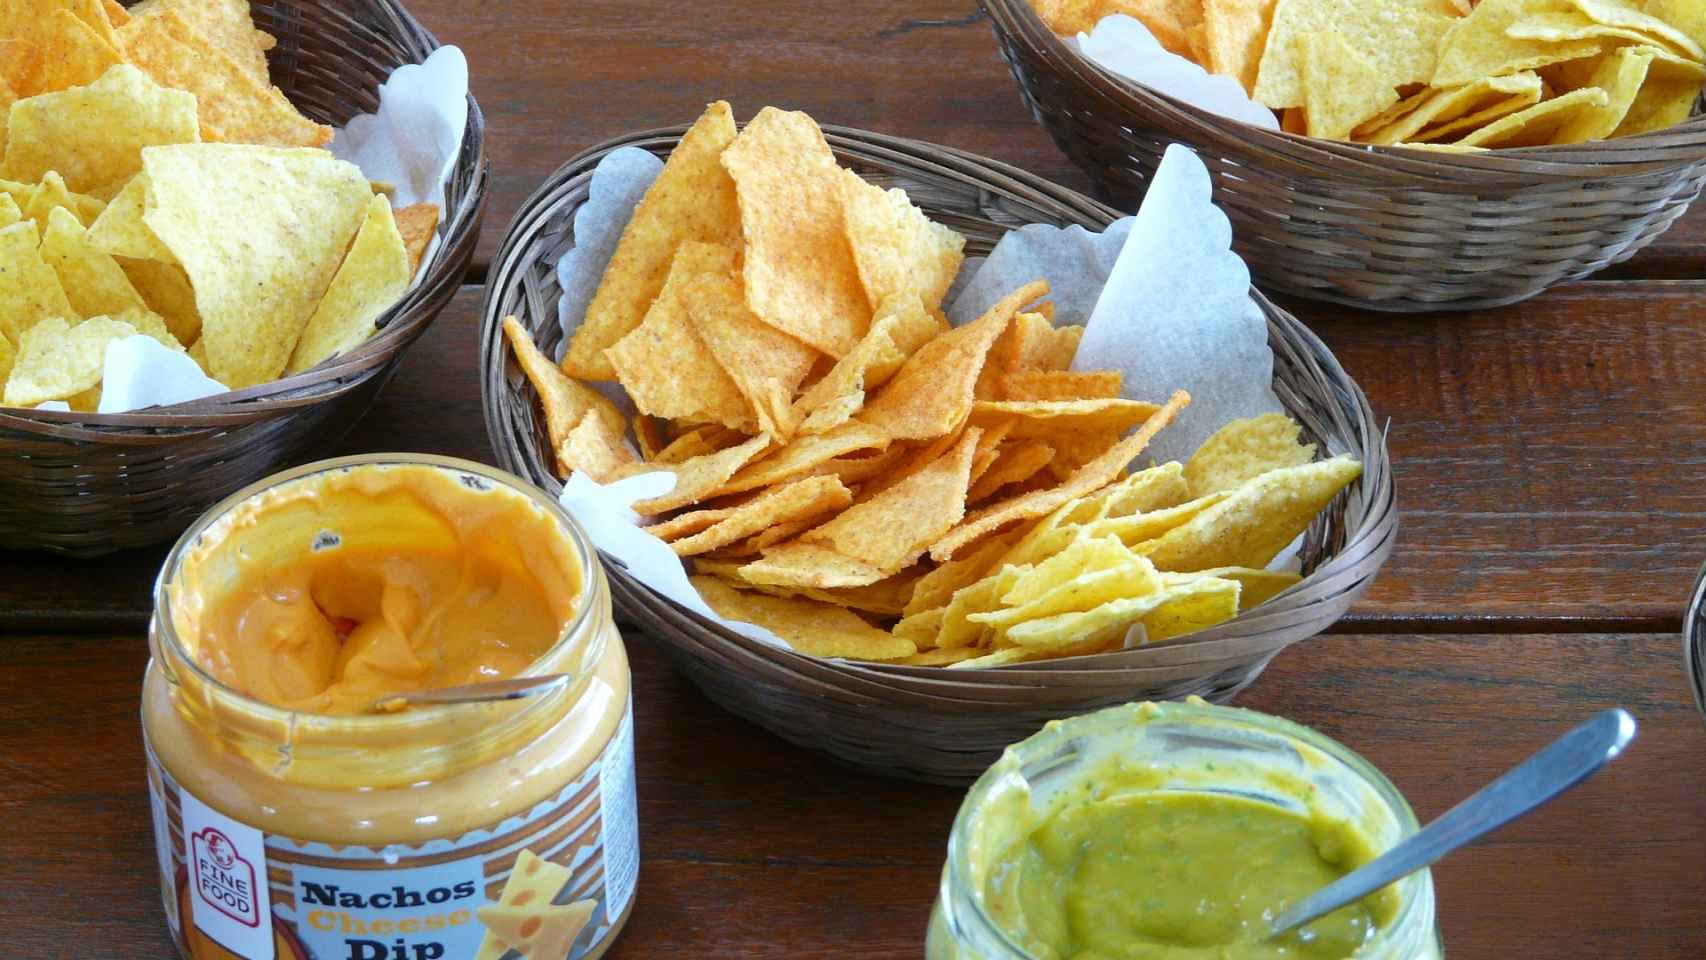 Los nachos y las salsas industriales tienen los componentes adecuados (sal, azúcares…) para alcanzar el punto de felicidad.